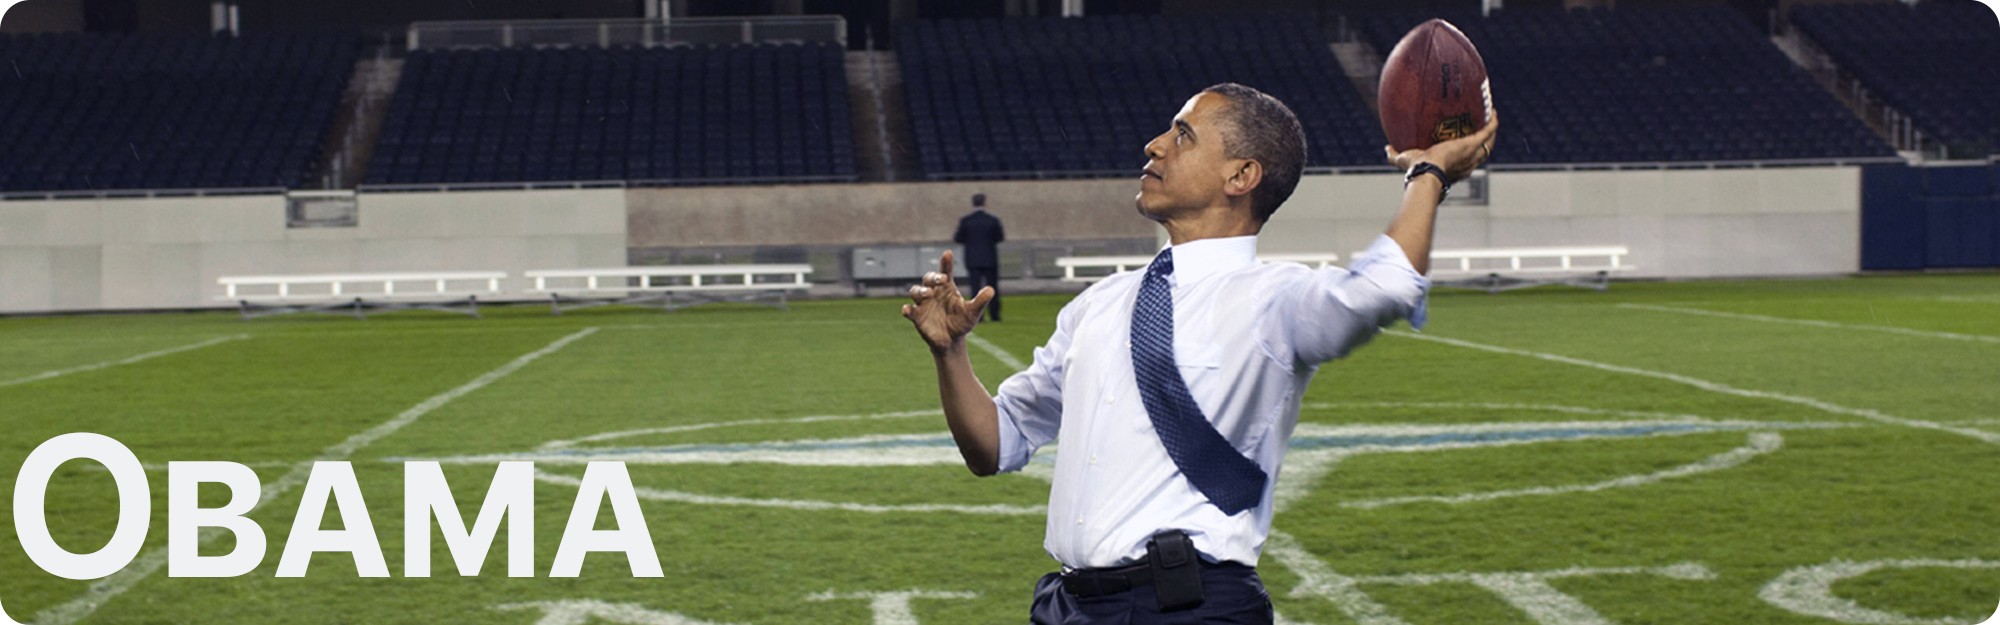 US Presidents Playing Football - Barack Obama